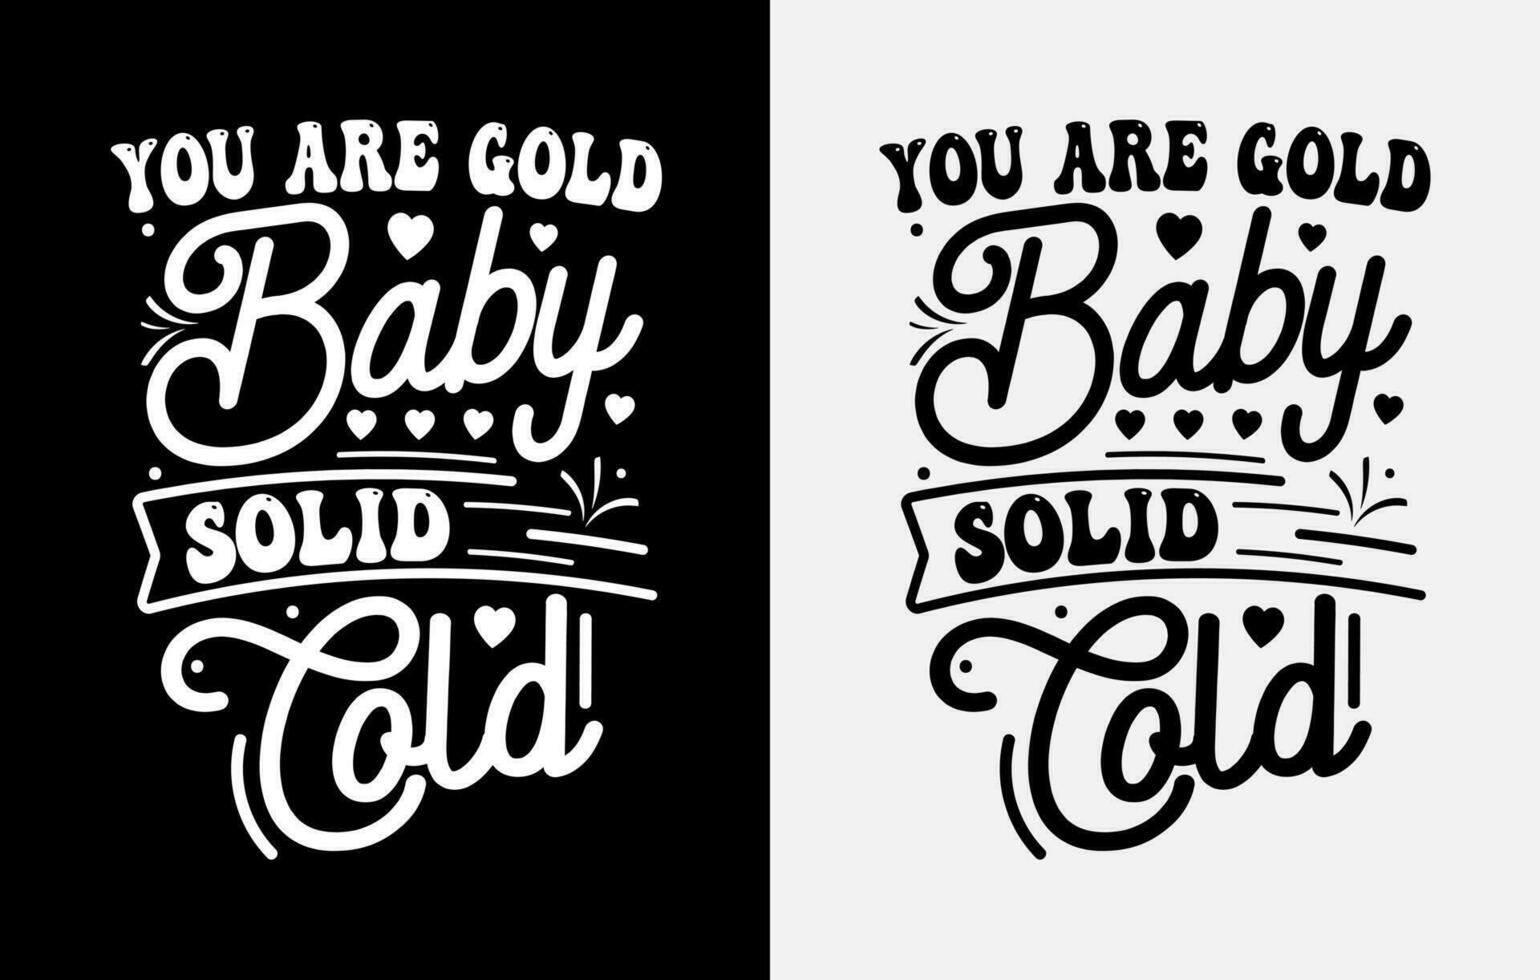 tipografía motivacional diseños creativos de camisetas, diseño de camisetas con letras vector